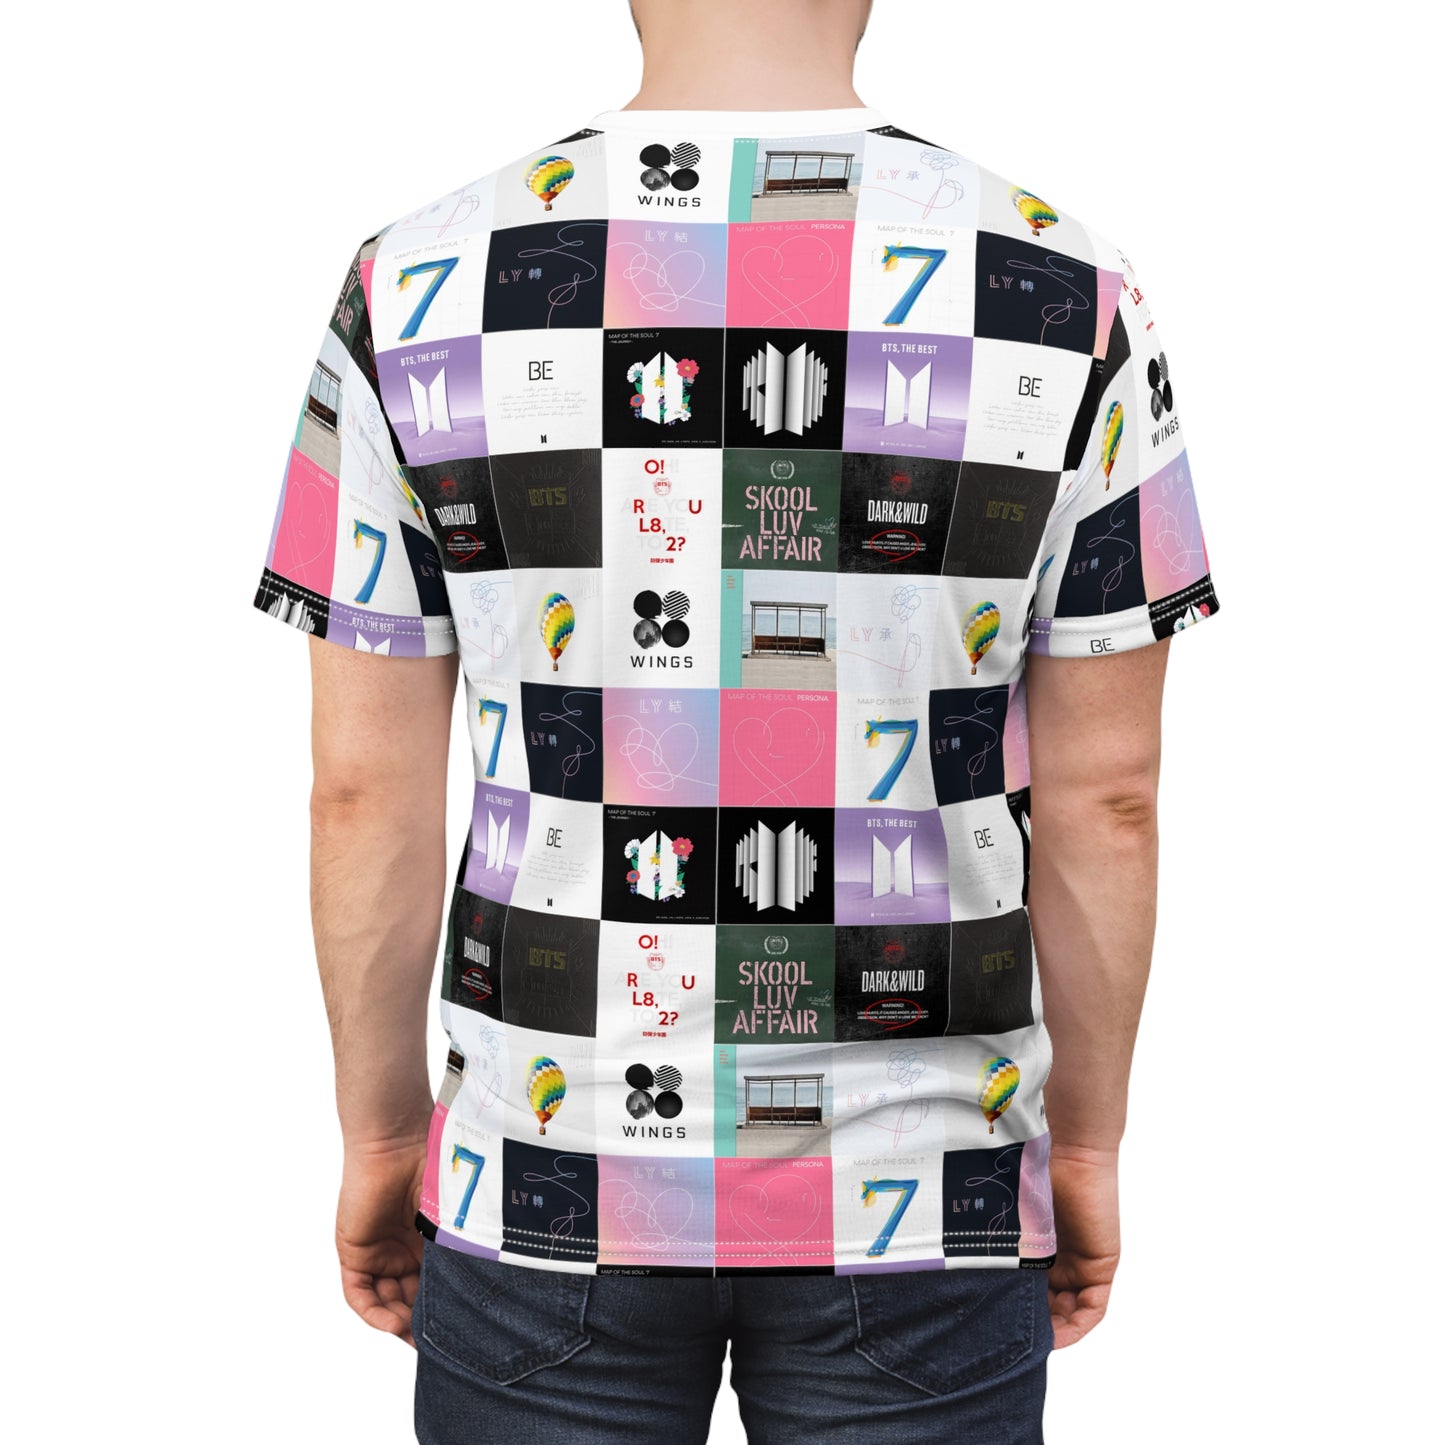 BTS Album Cover Art Collage Unisex Tee Shirt